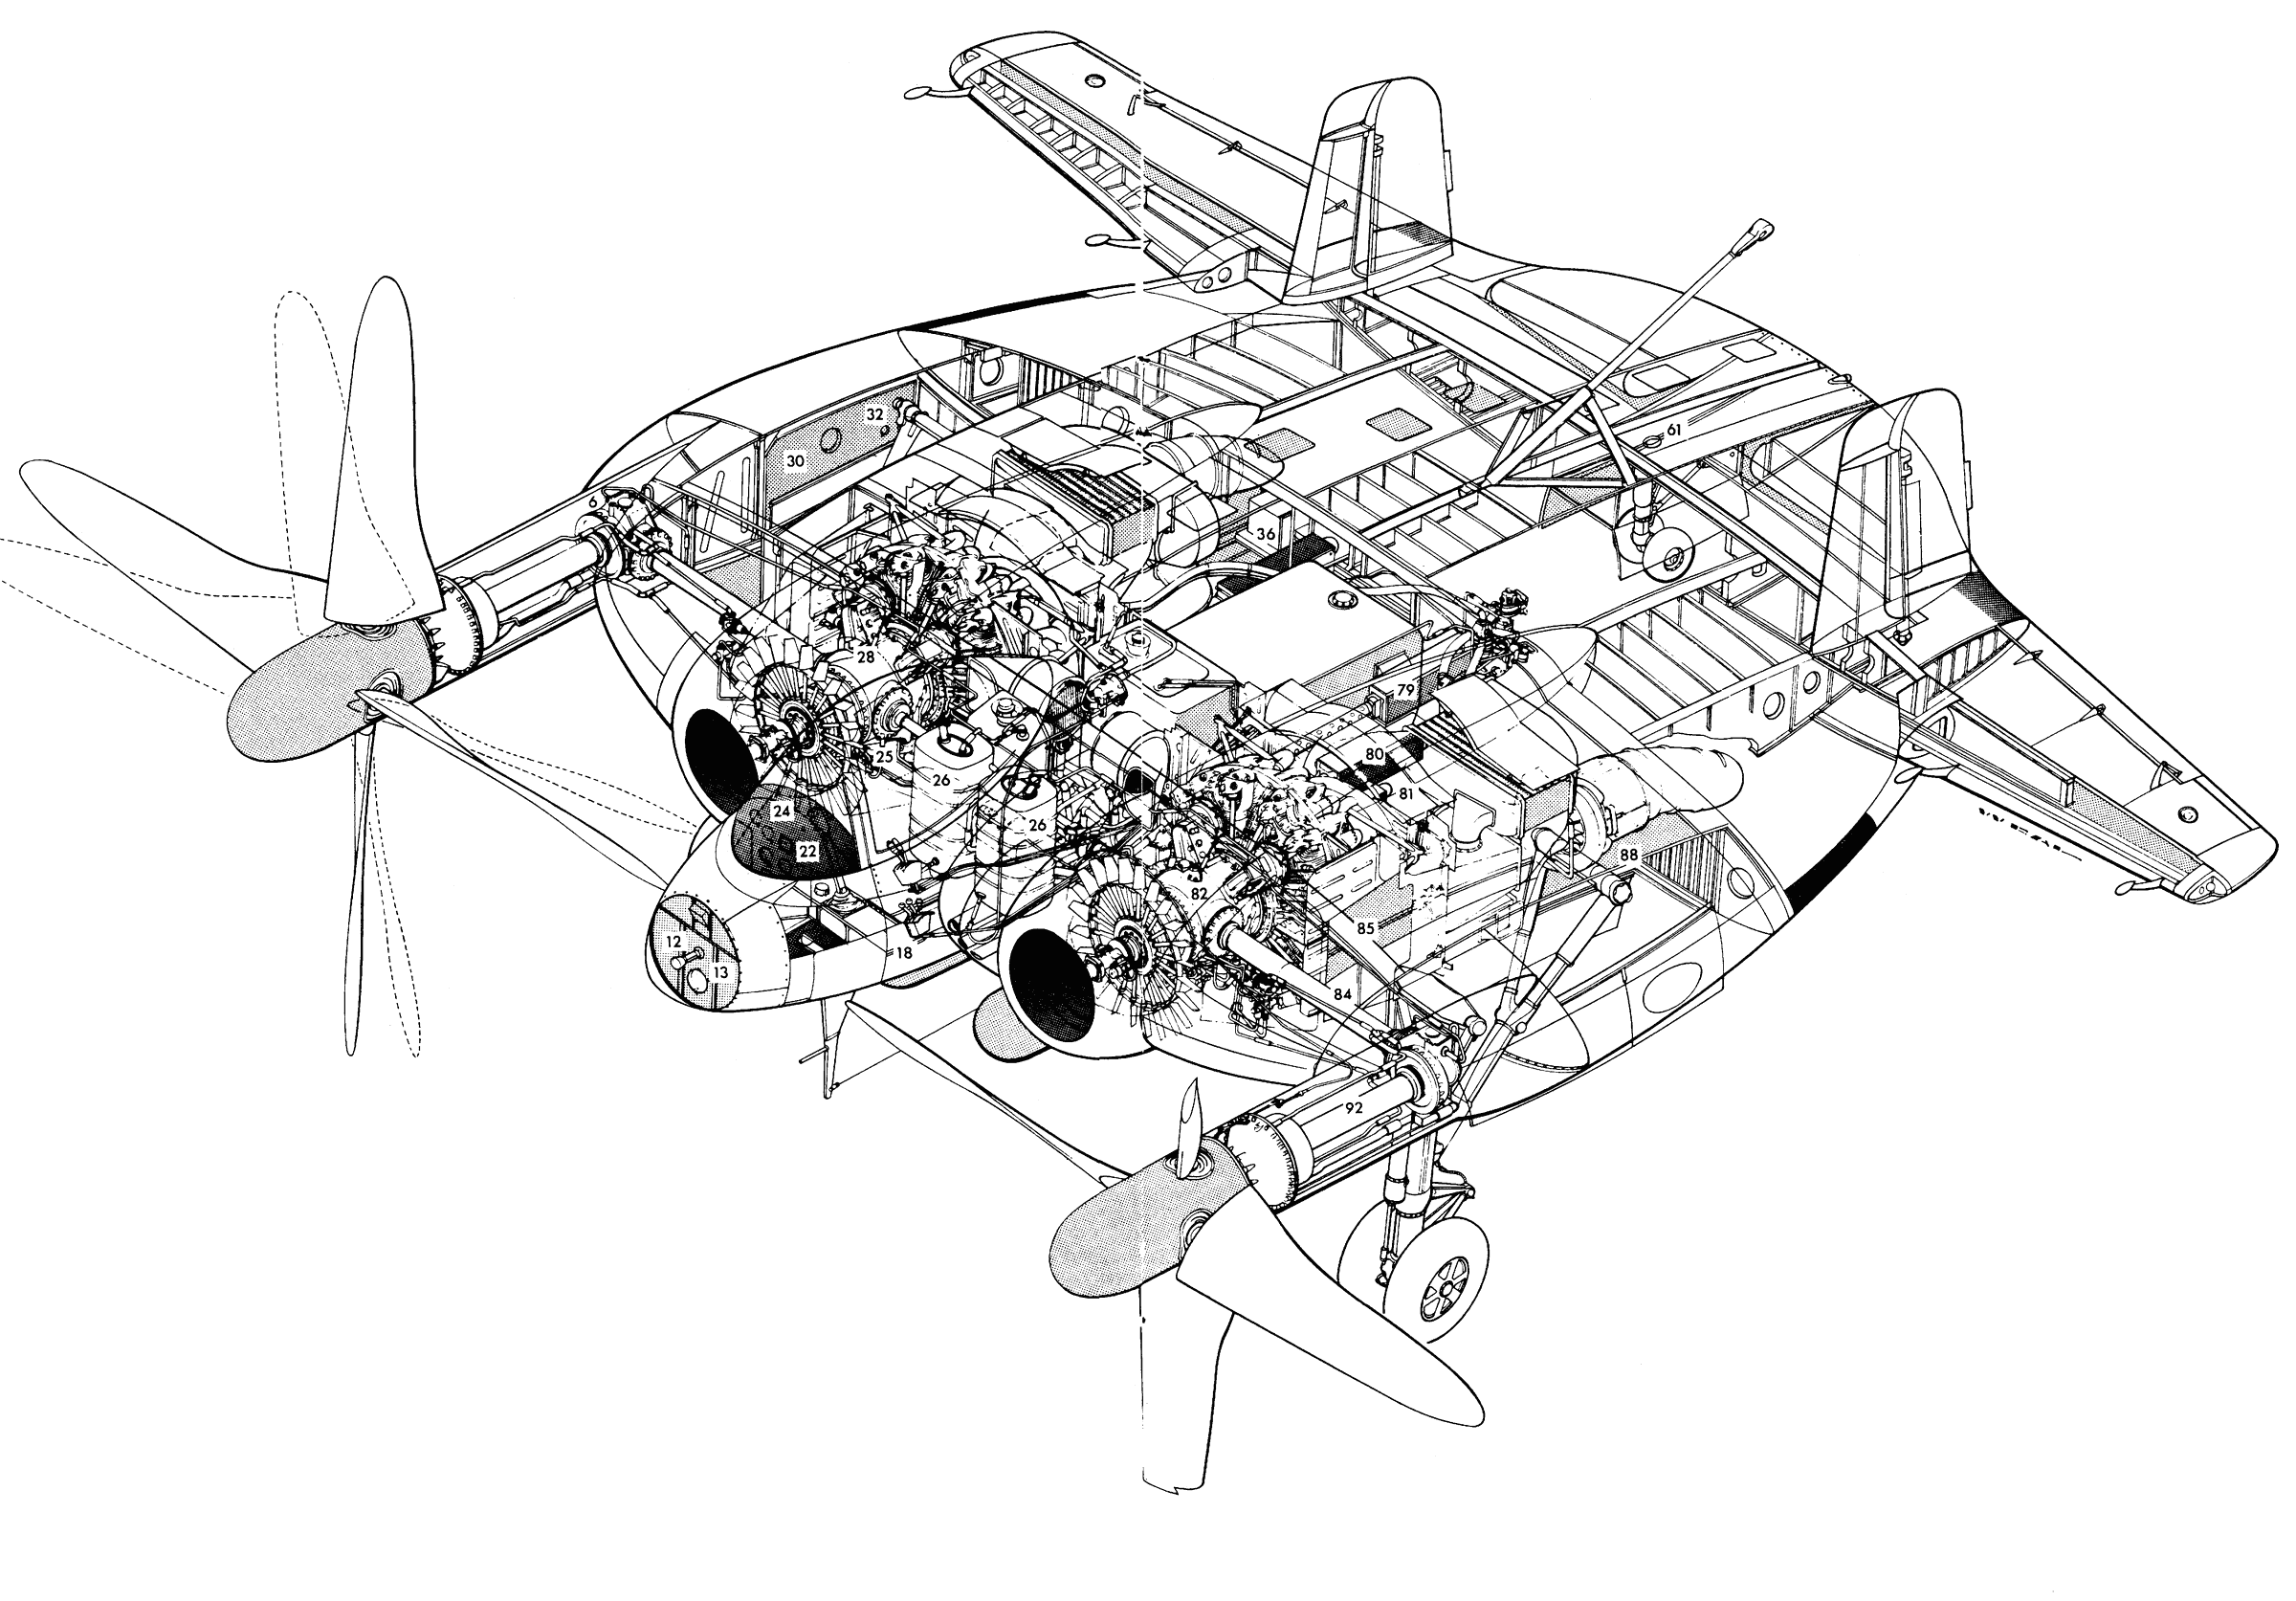 Vought XF5U cutaway